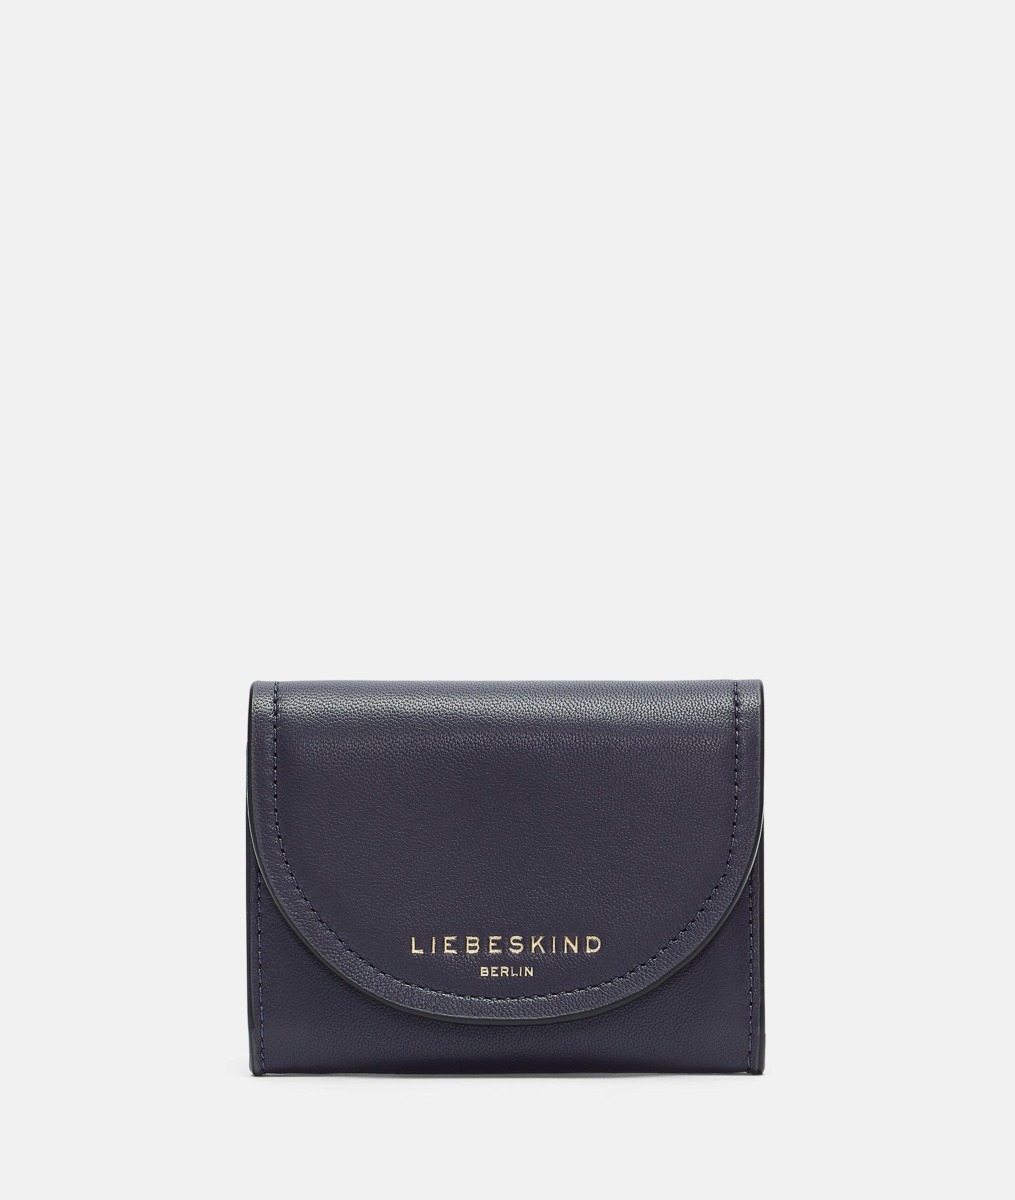 Liebeskind Women's Wallet Purple GOOFASH